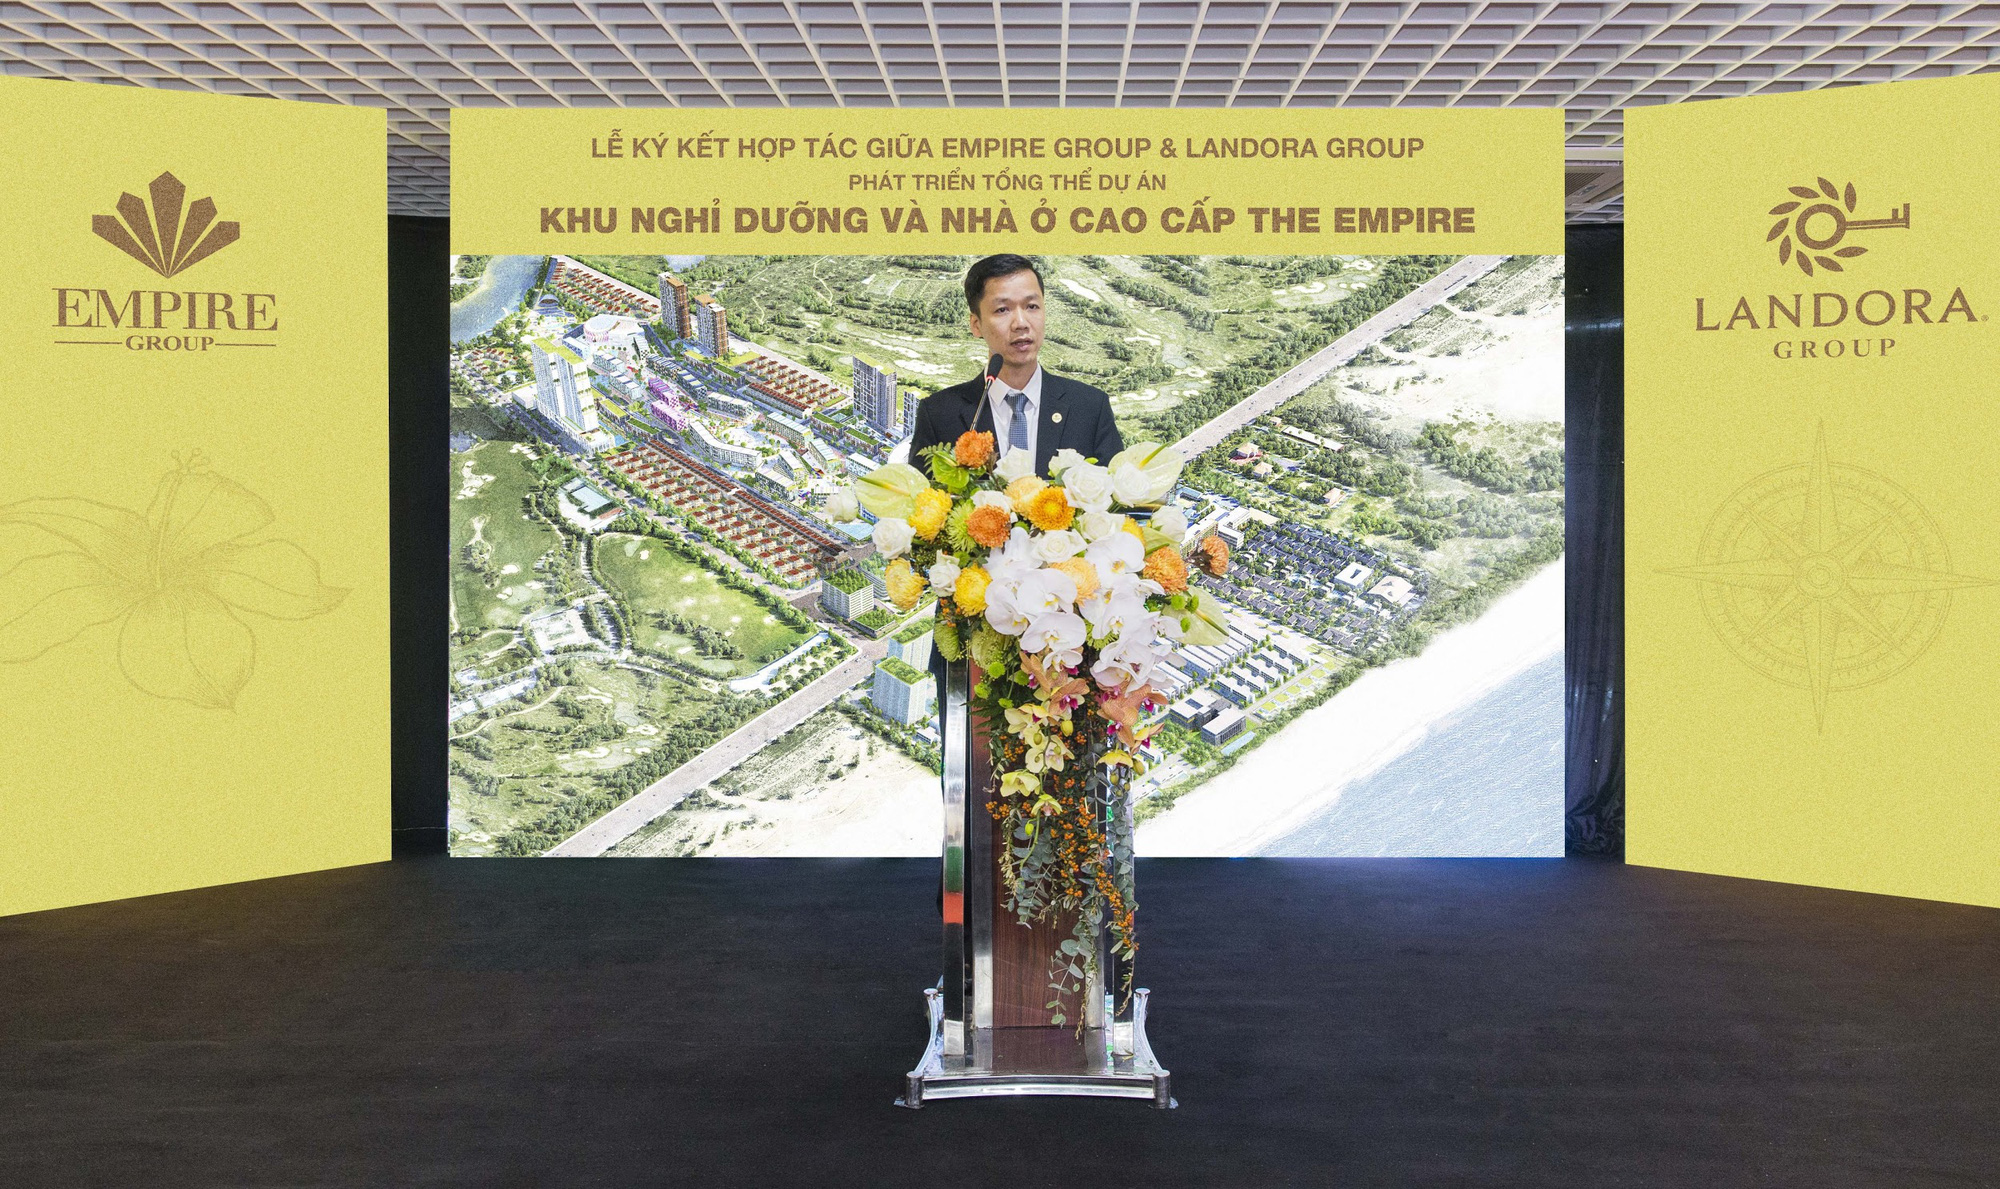 Landora Group trở thành nhà phát triển toàn diện đại đô thị kiểu mẫu The Empire Đà Nẵng - Ảnh 2.